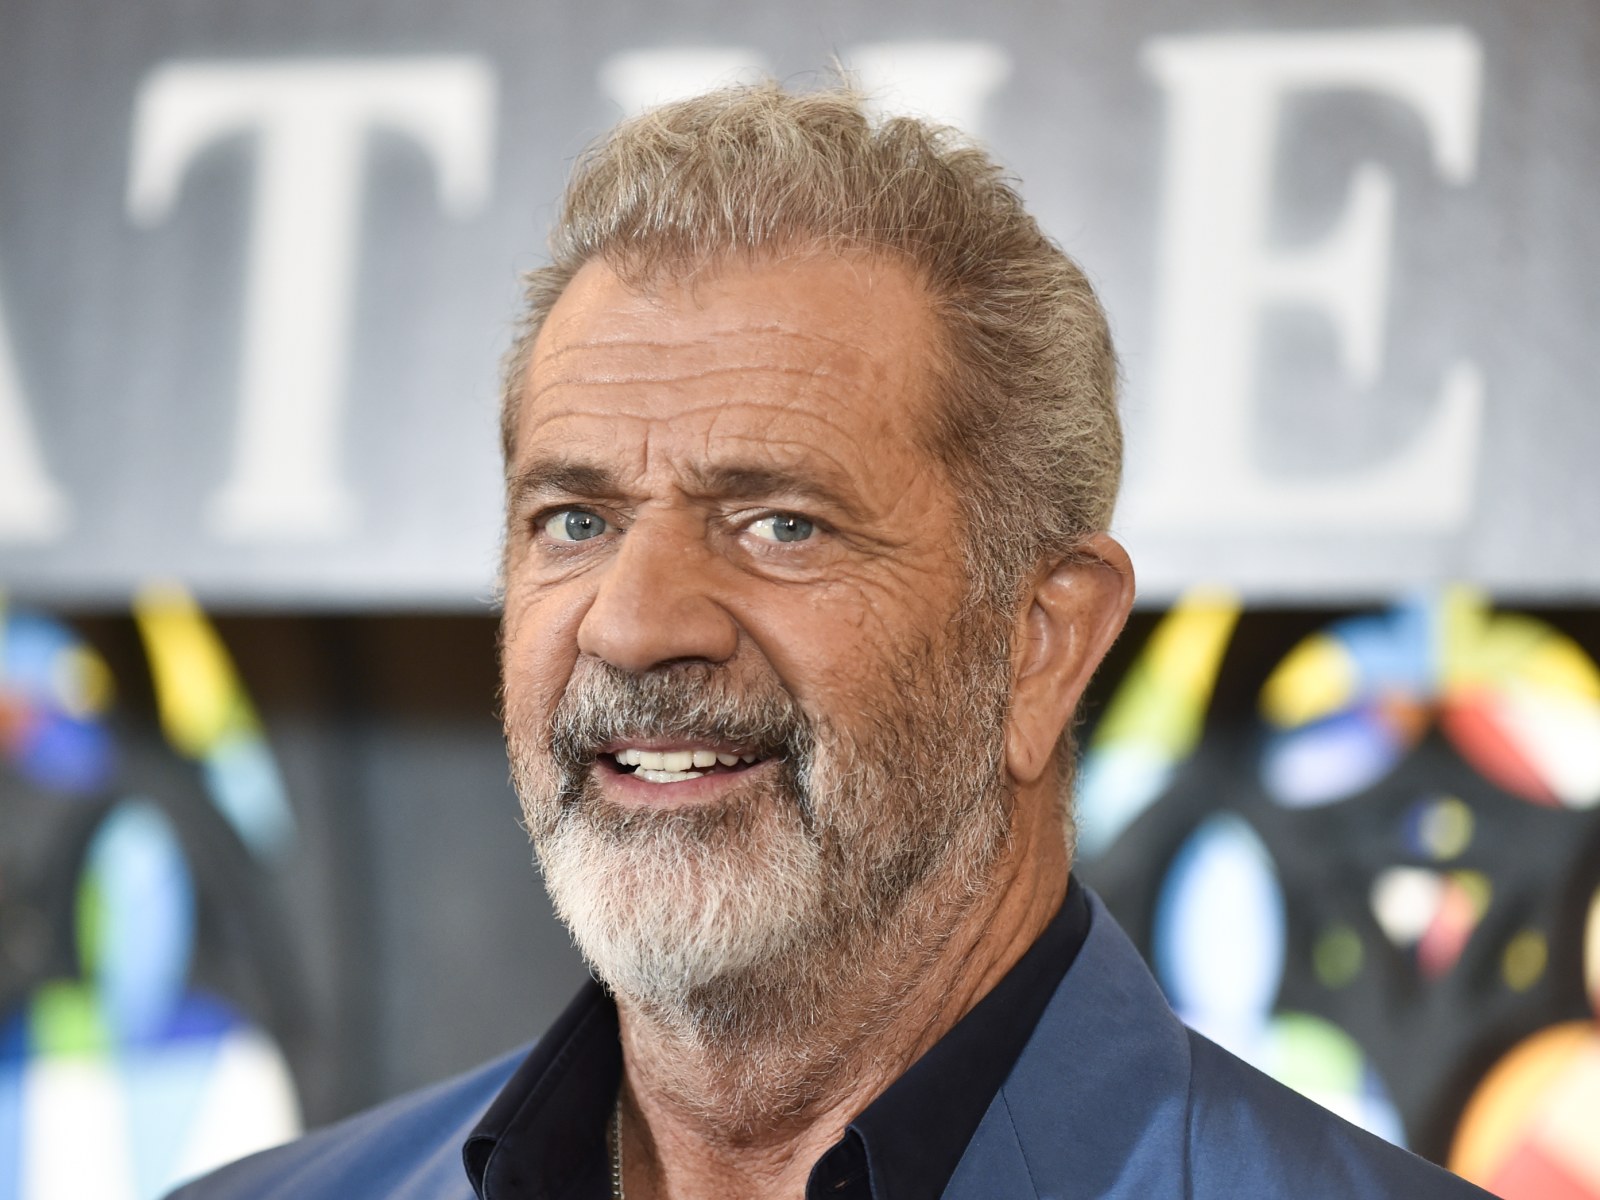 Mel Gibson is not dead